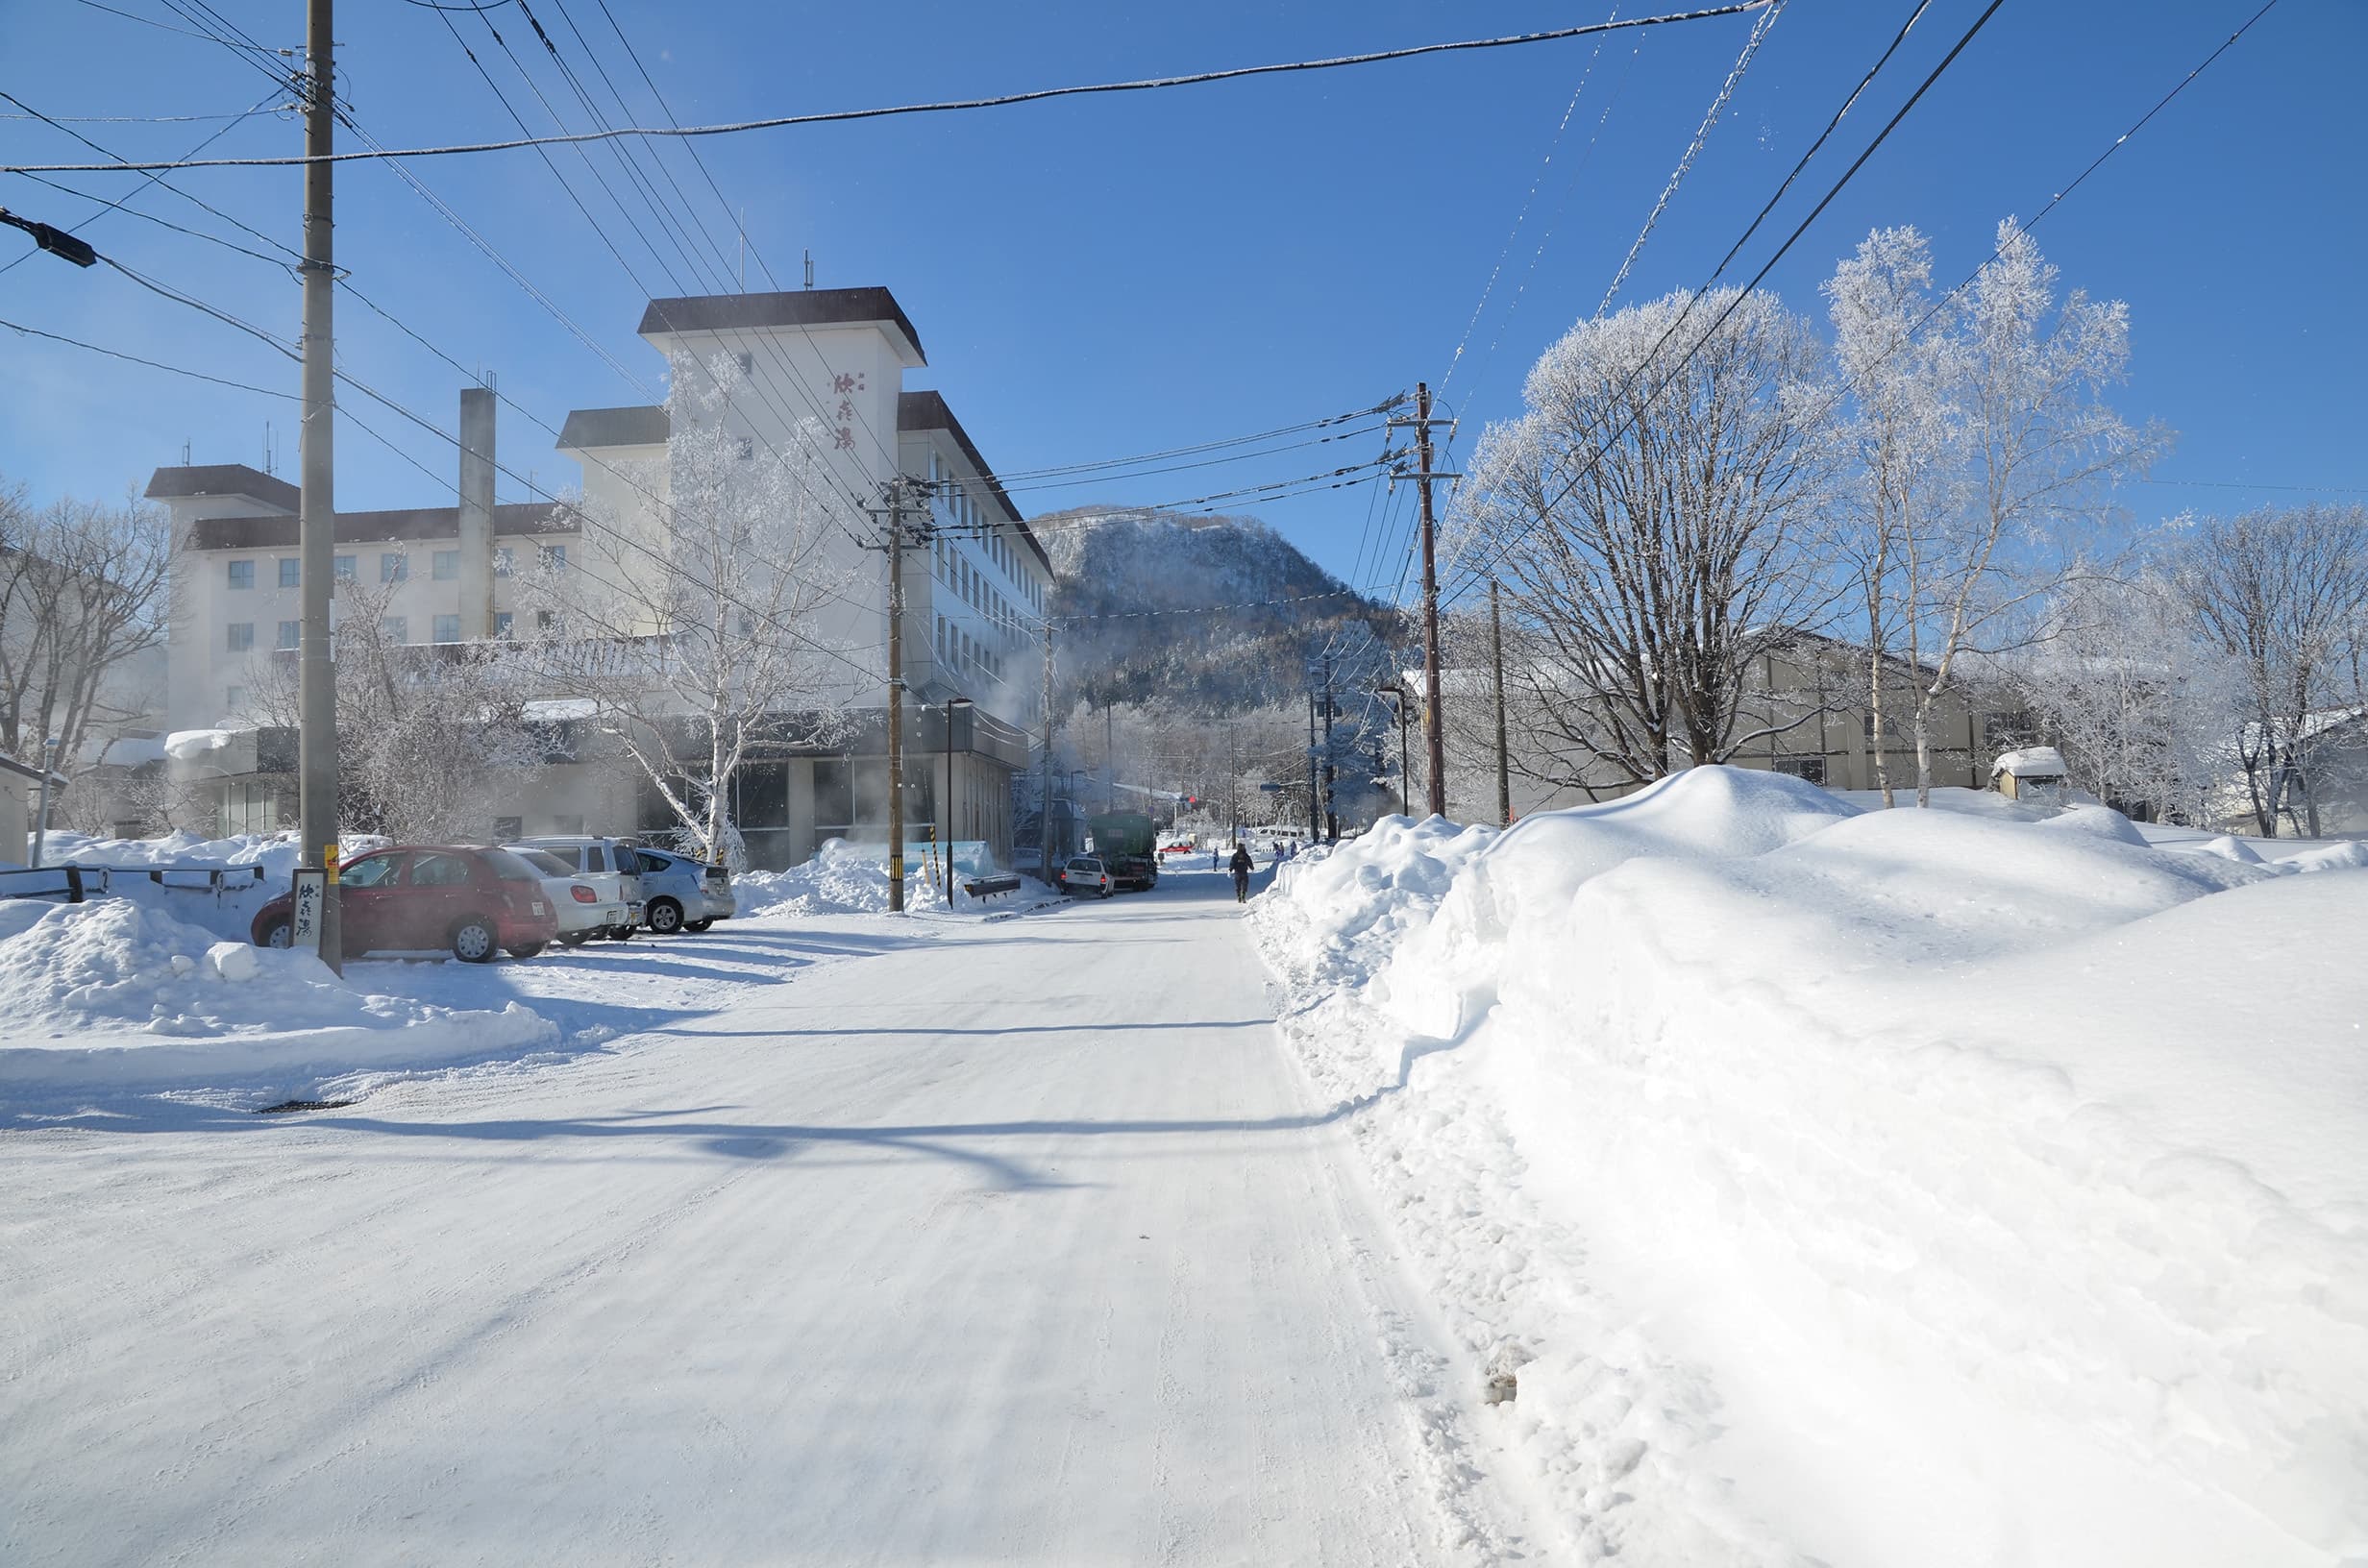 極寒藝術伝染装置と周辺及び東北海道地域の画像